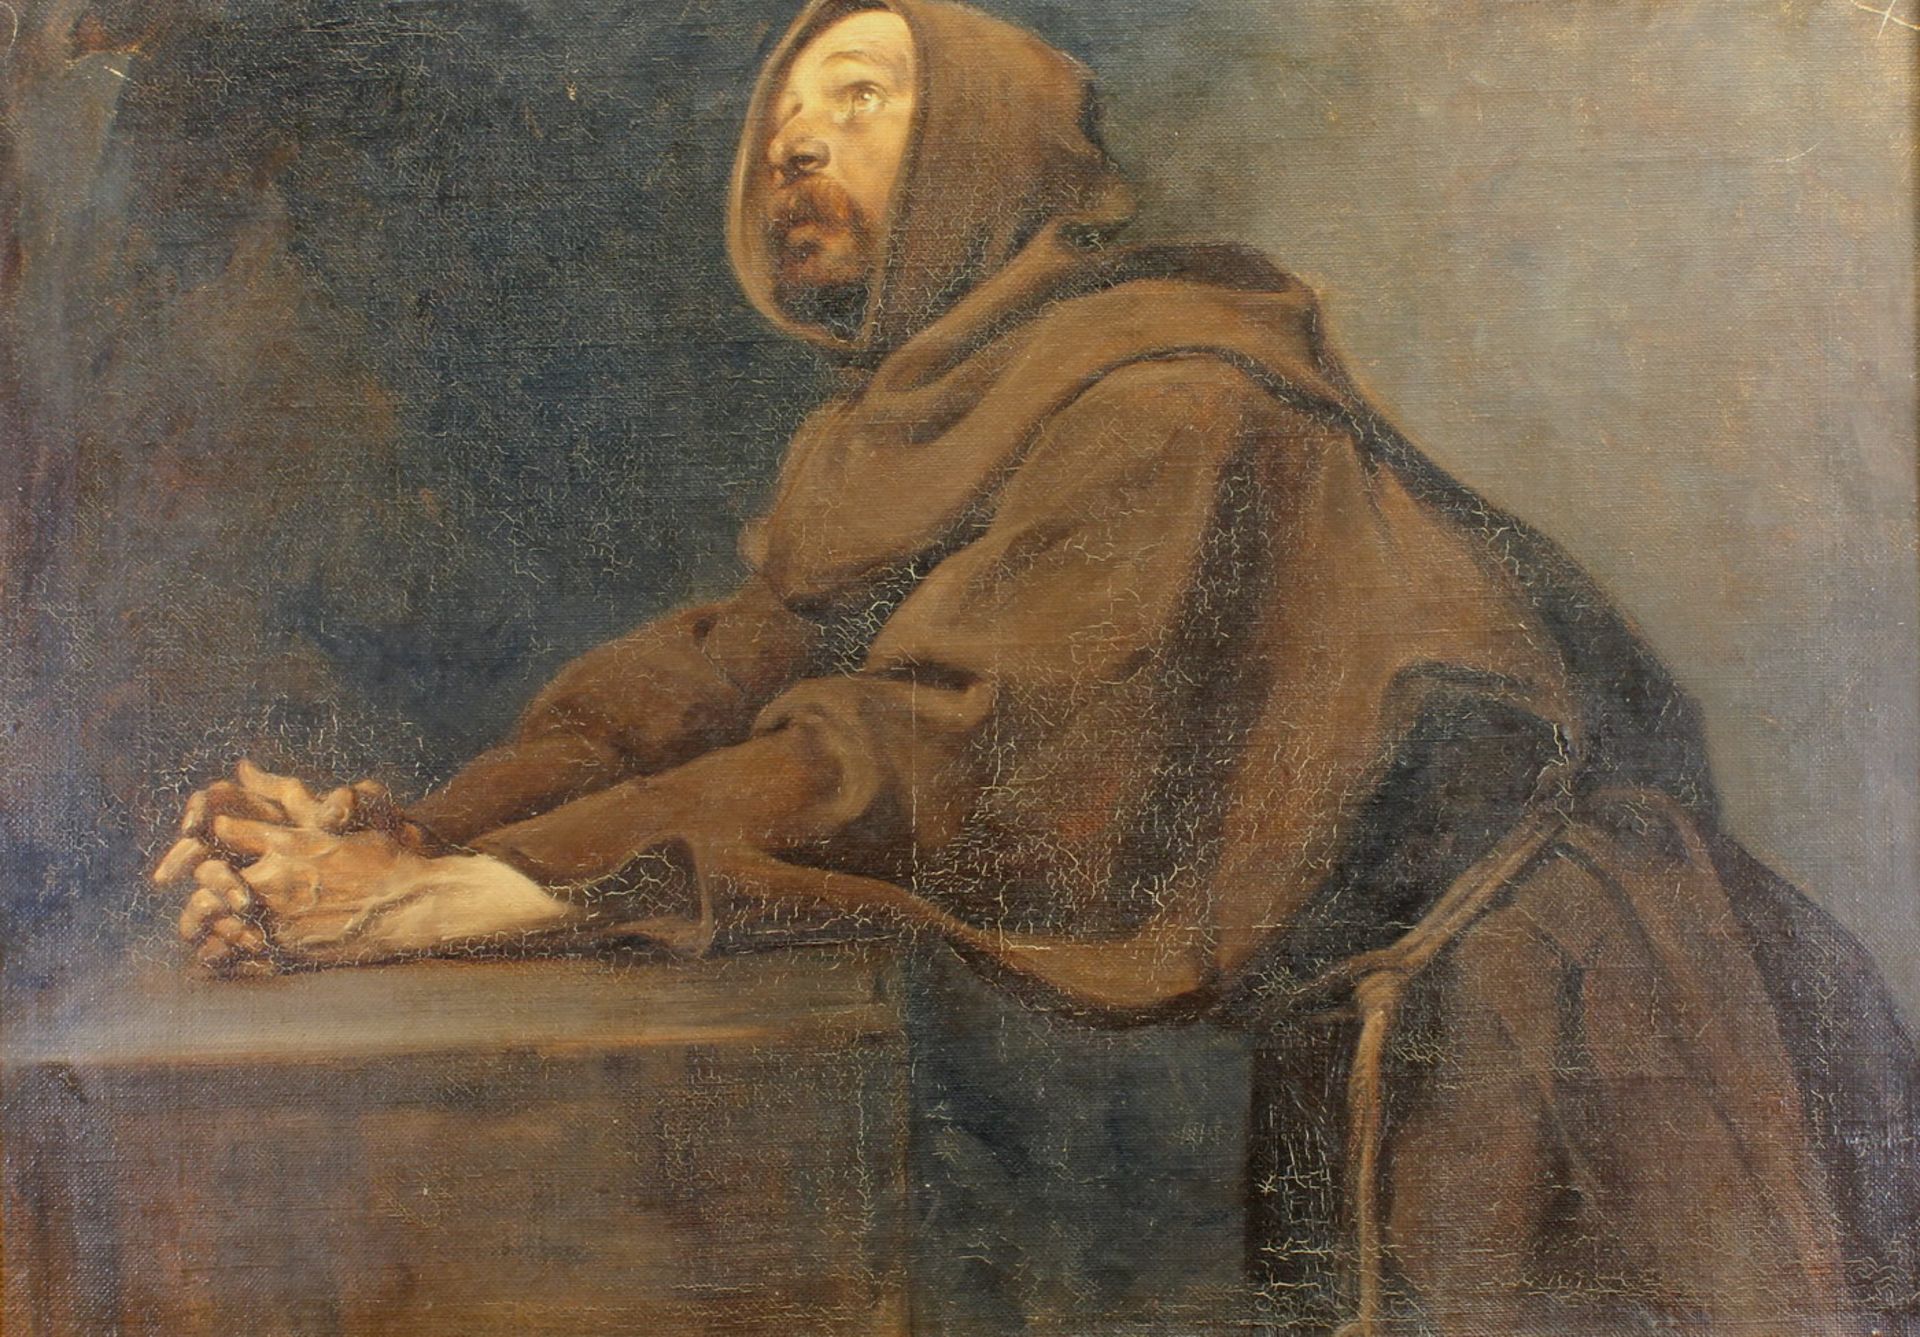 Dietrich, H. (?), (19. Jh.), "Franziskaner im Gebet", Öl auf Leinwand, unten links undeutlich